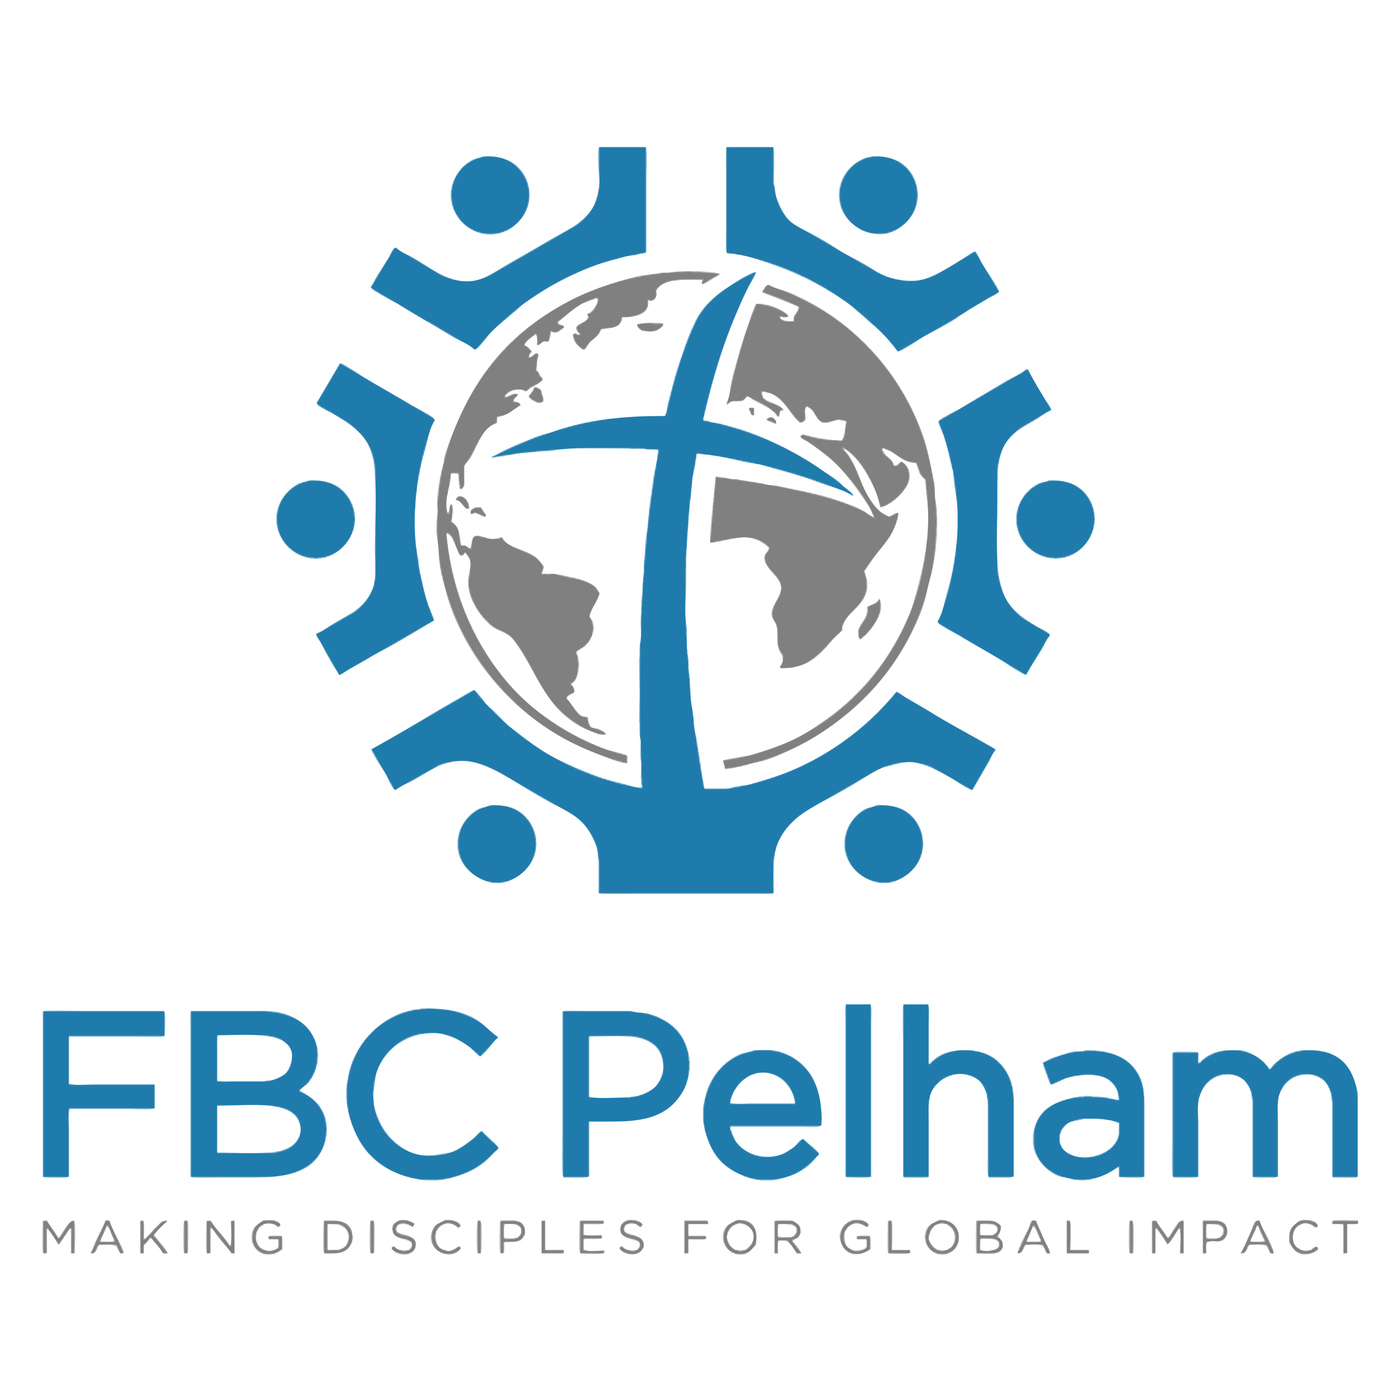 First Baptist Church Pelham: Ministry Inside the Church